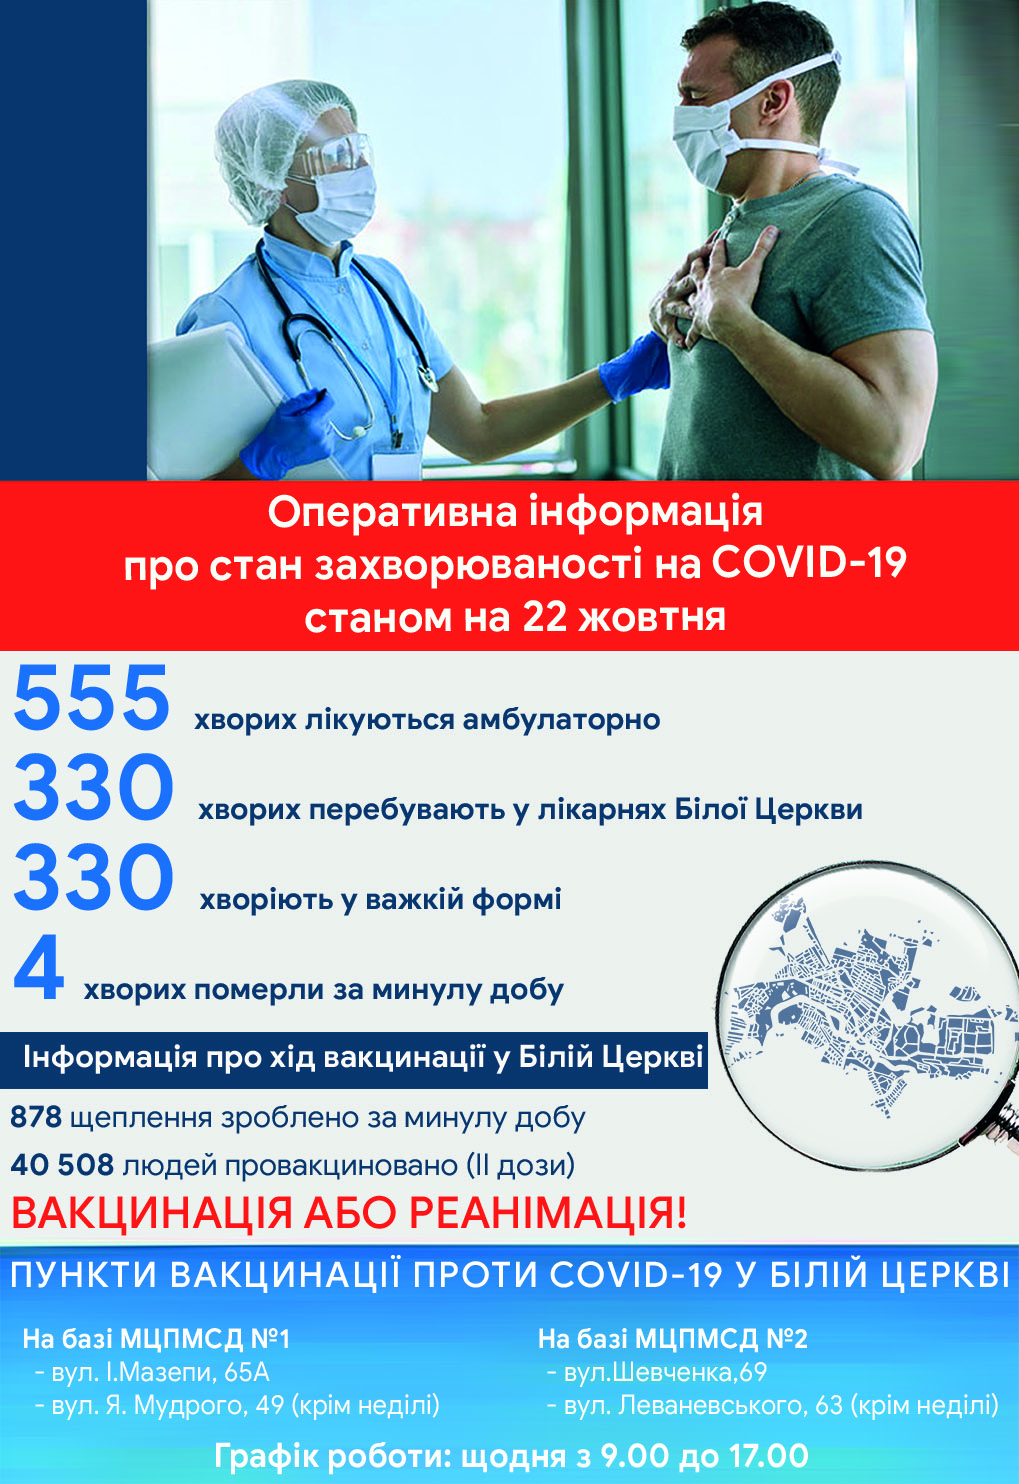 Оперативна інформація про стан захворюваності на COVID-19 станом на 22 жовтня